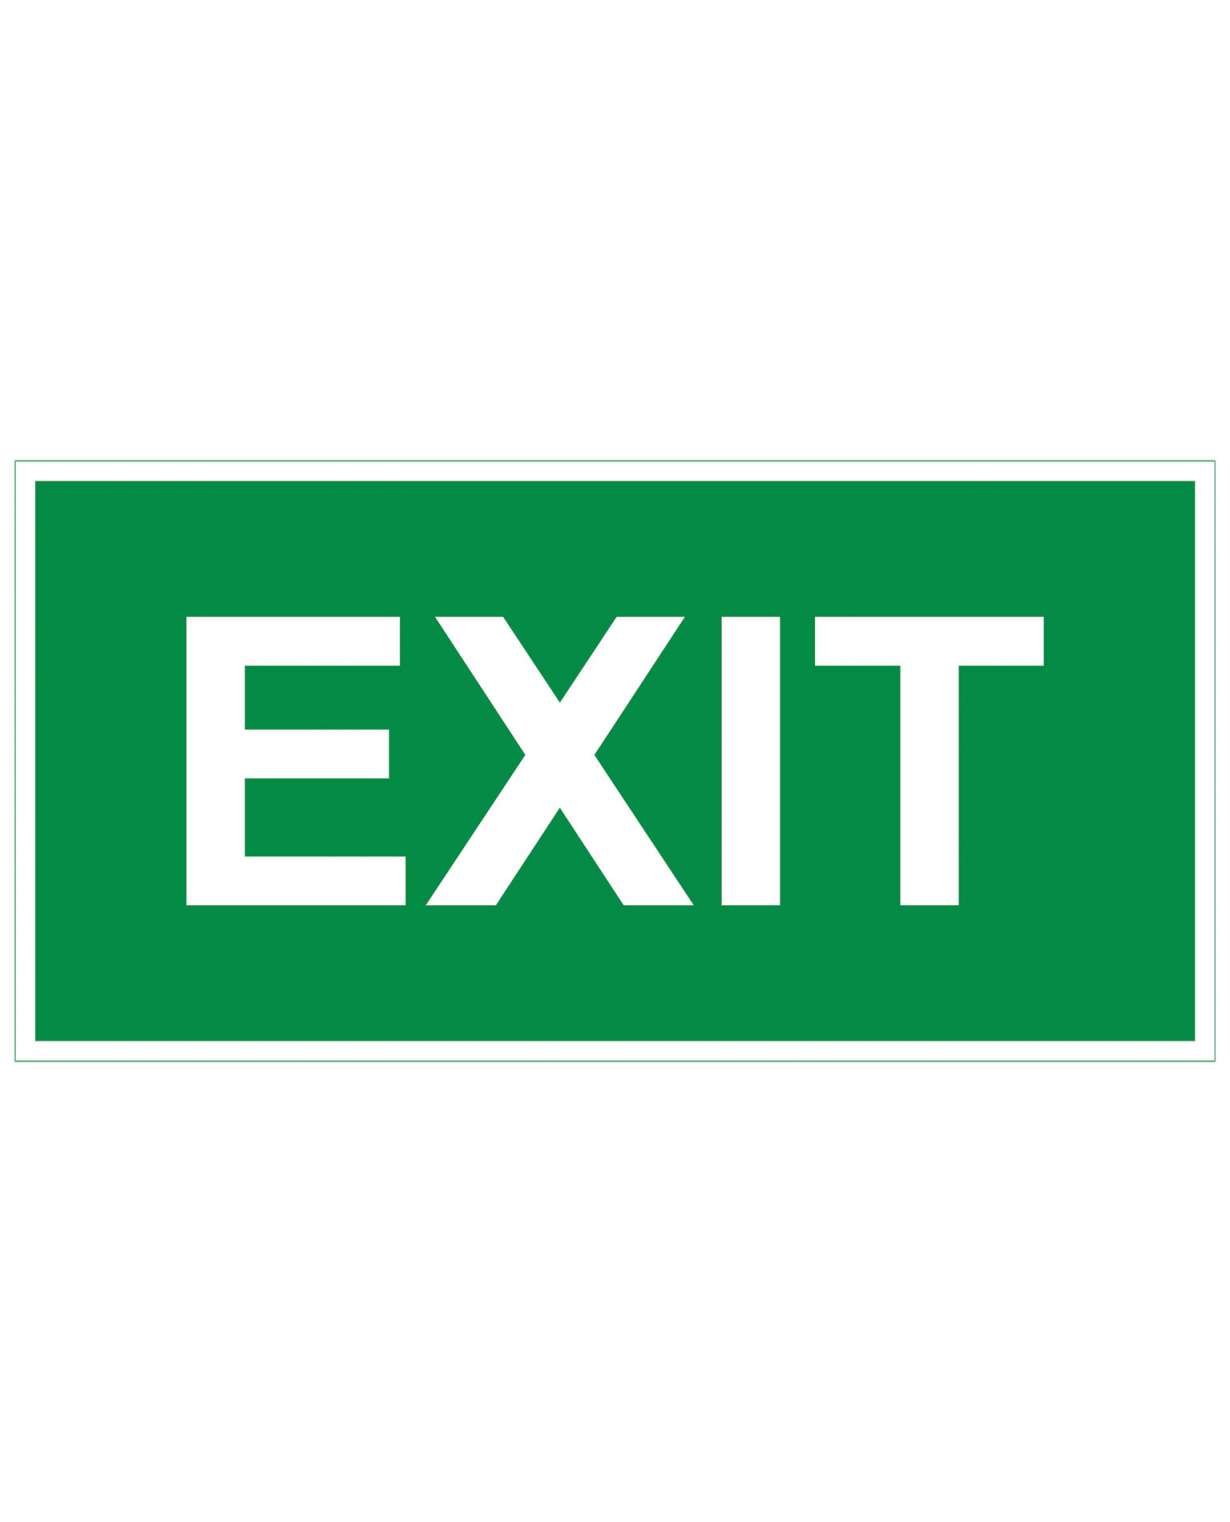 Exit, Magneetti jälkiheijastava, 400x200 mm